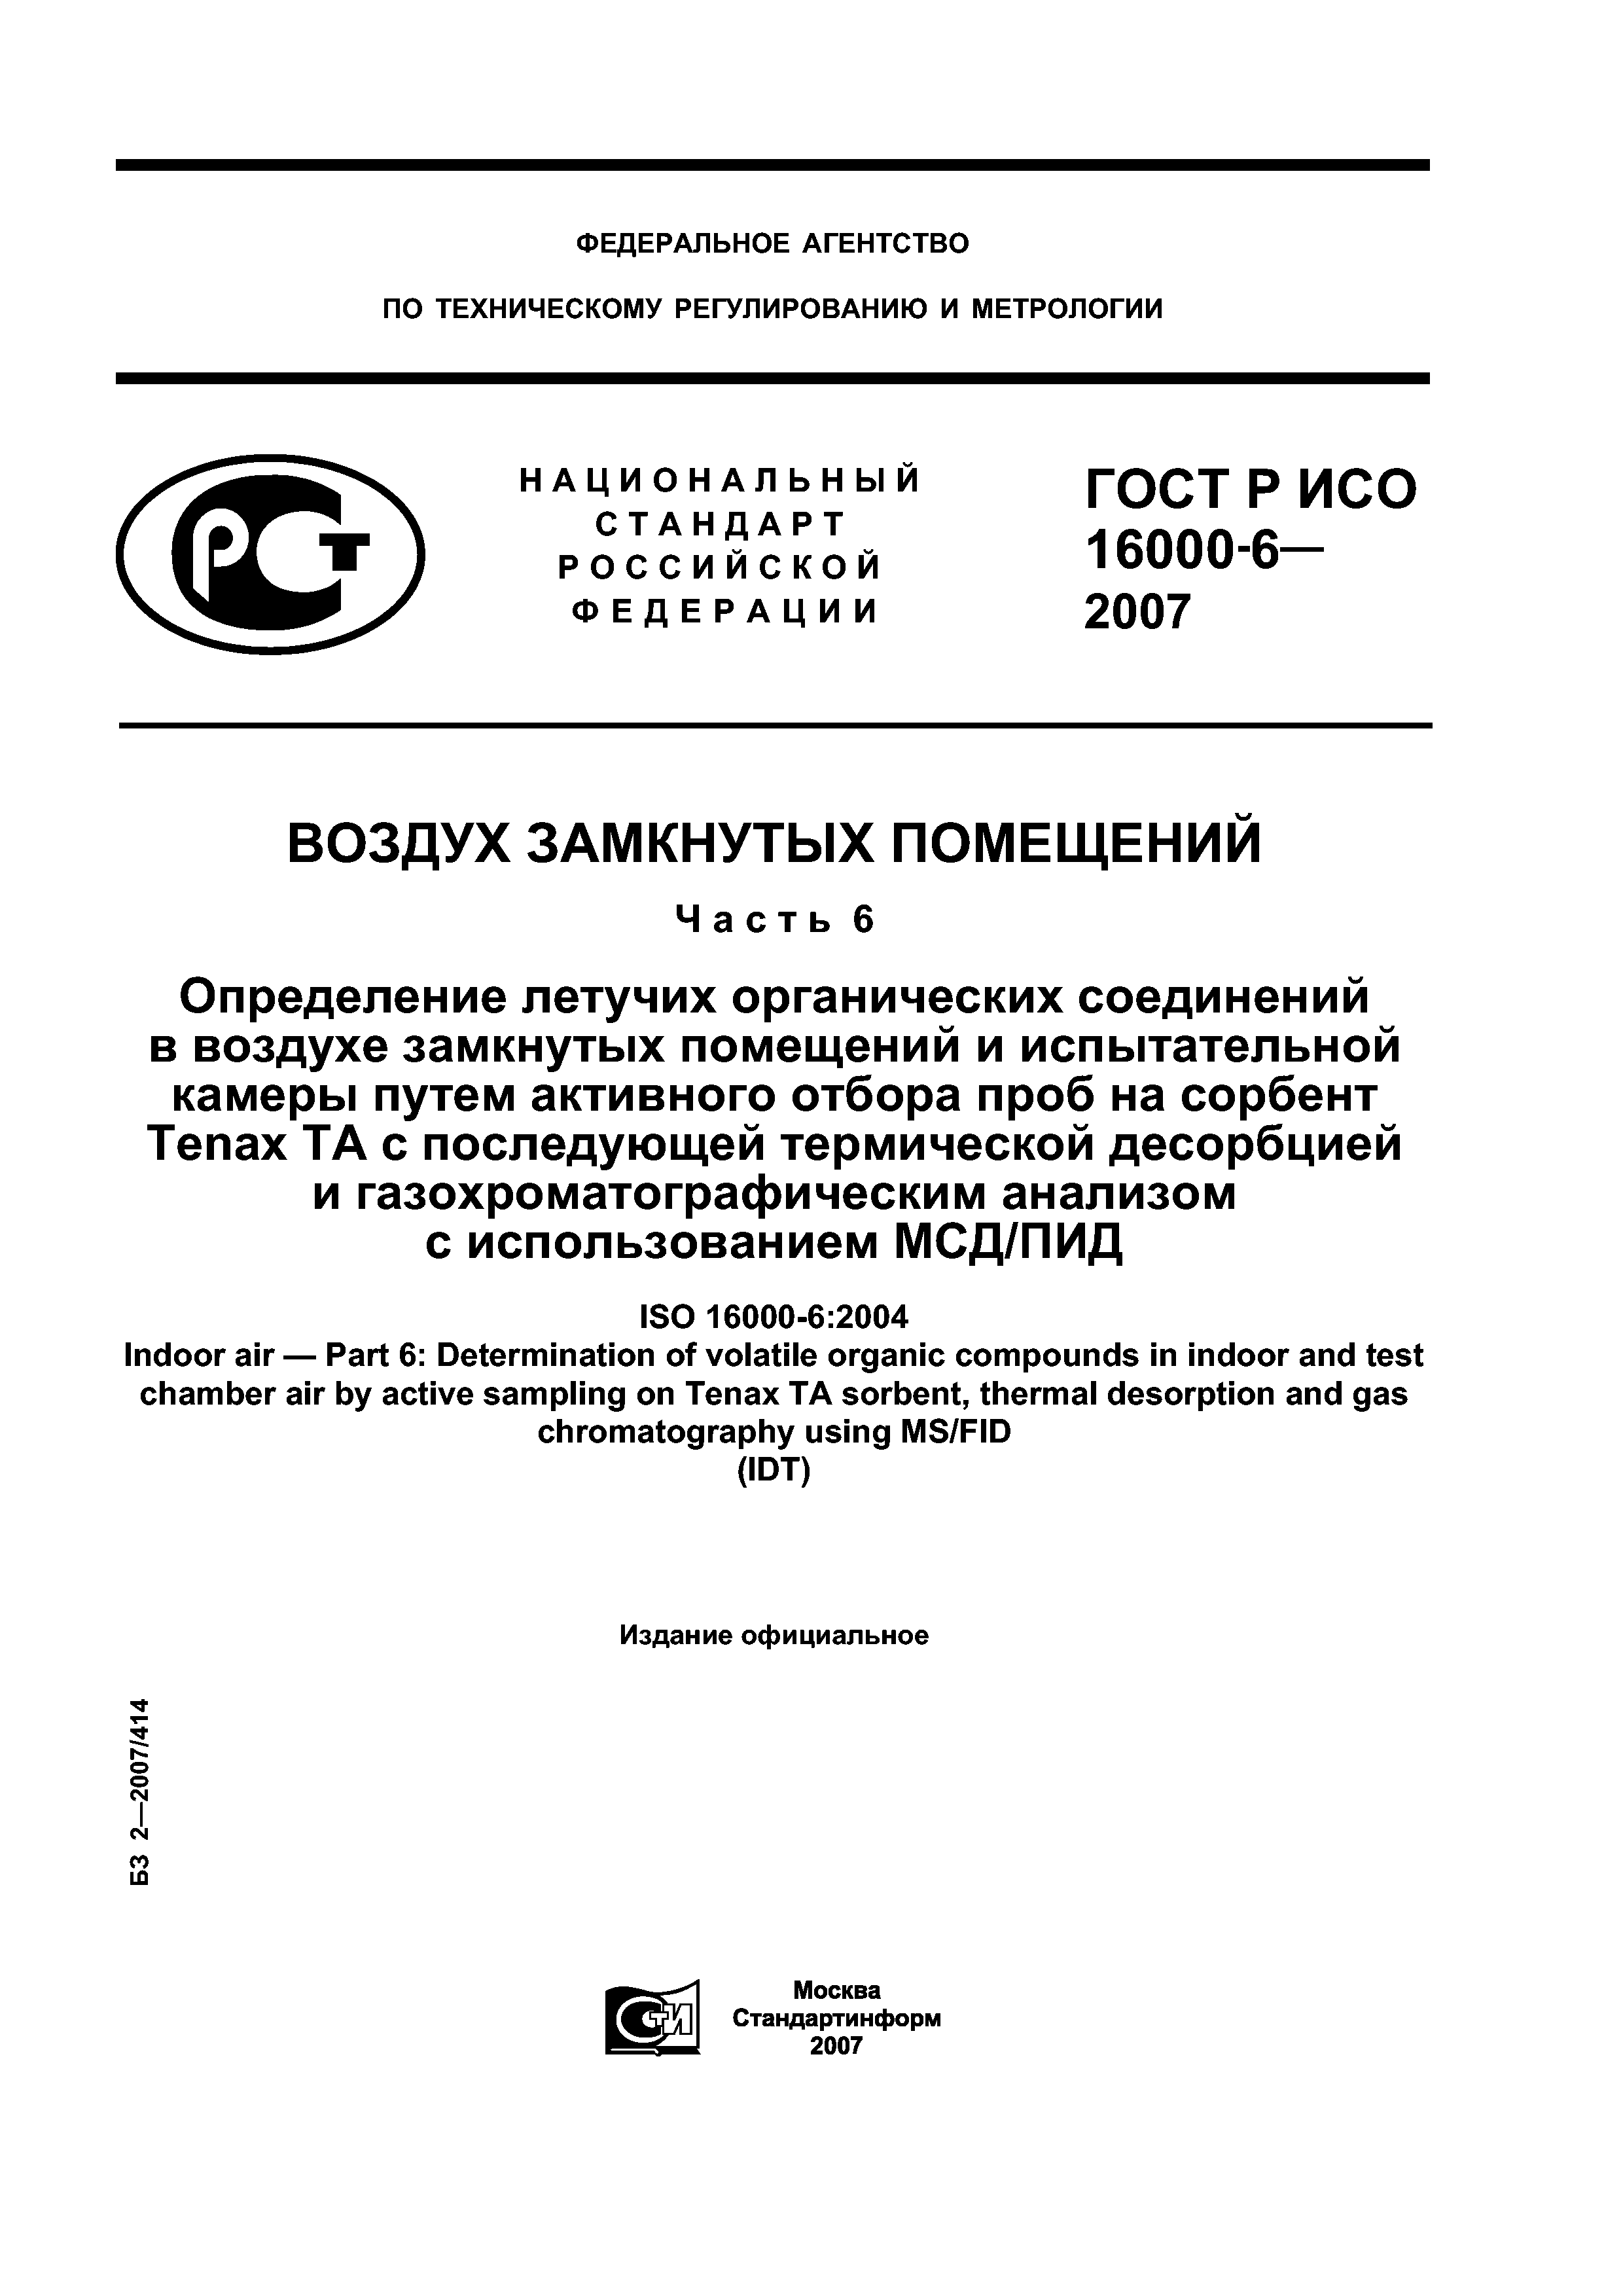 ГОСТ Р ИСО 16000-6-2007